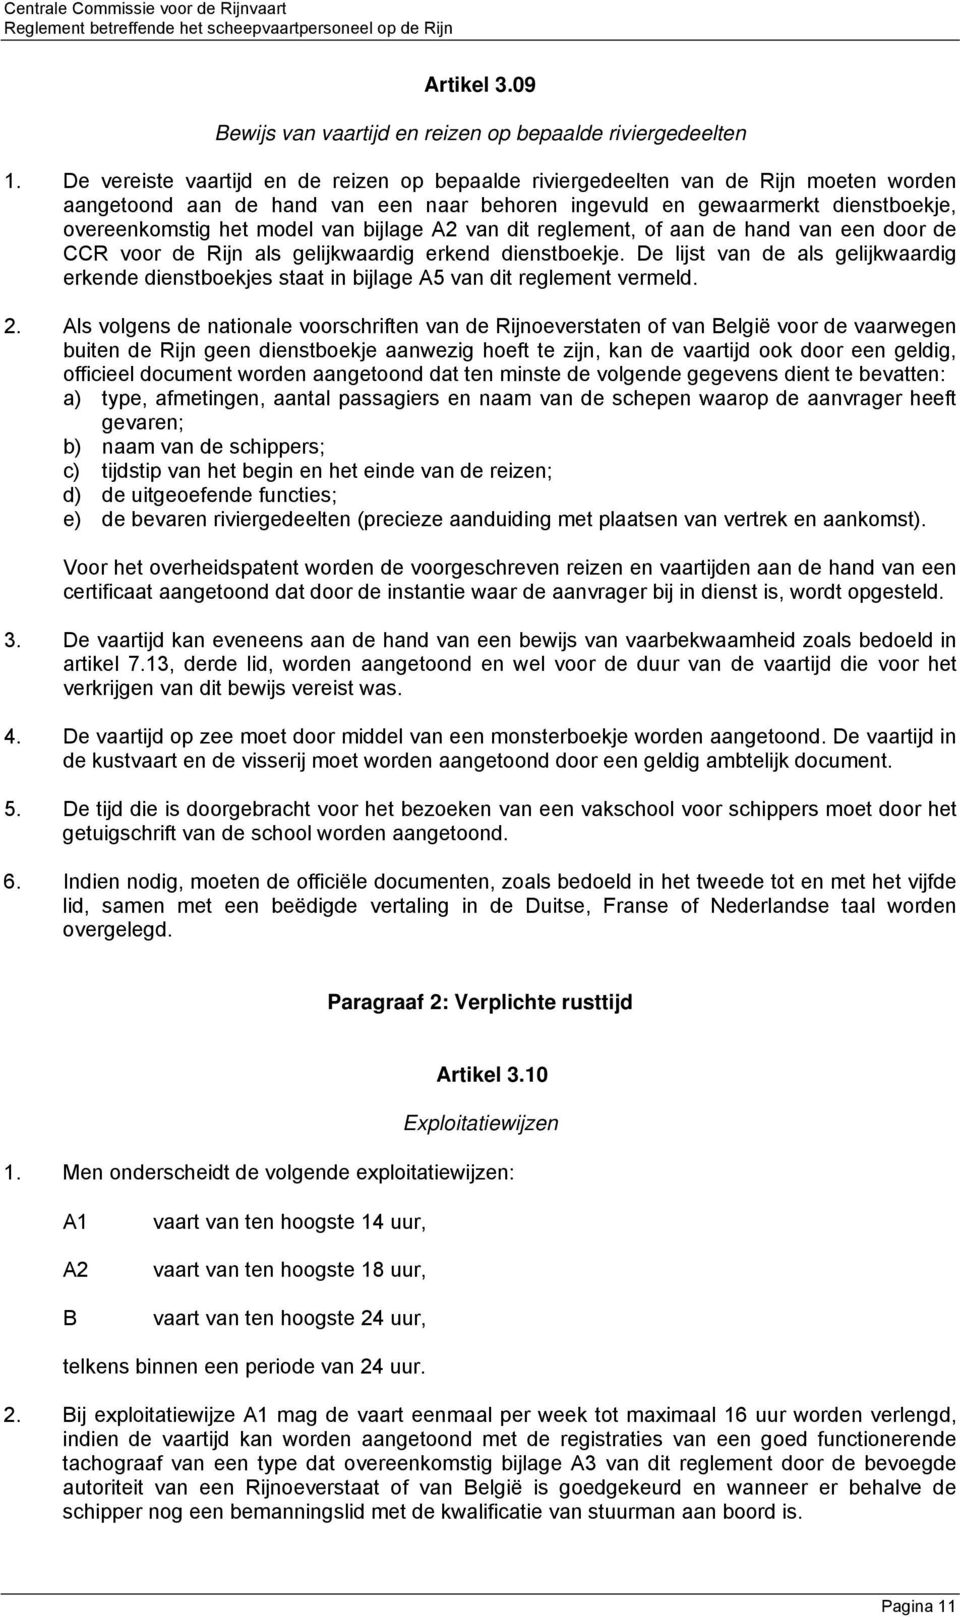 bijlage A van dit reglement, of aan de hand van een door de CCR voor de Rijn als gelijkwaardig erkend dienstboekje.